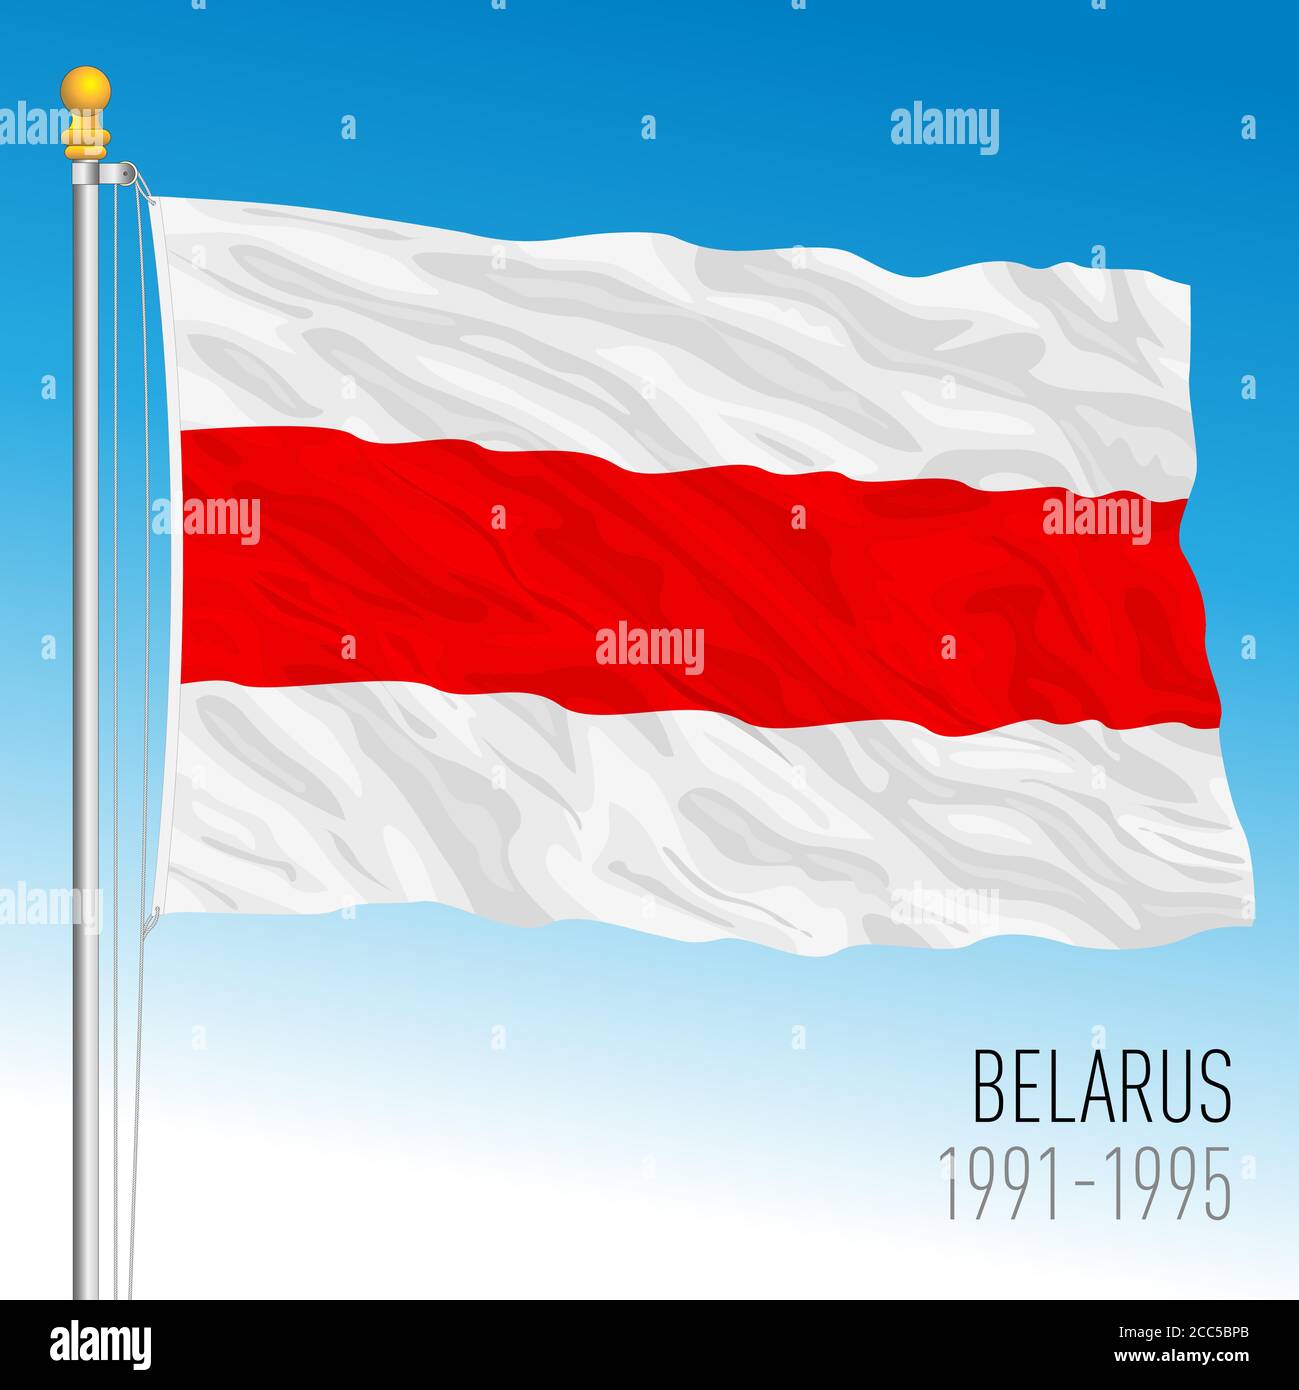 Belarus historische Flagge, europäisches Land, 1991-1995, Vektorgrafik Stock Vektor